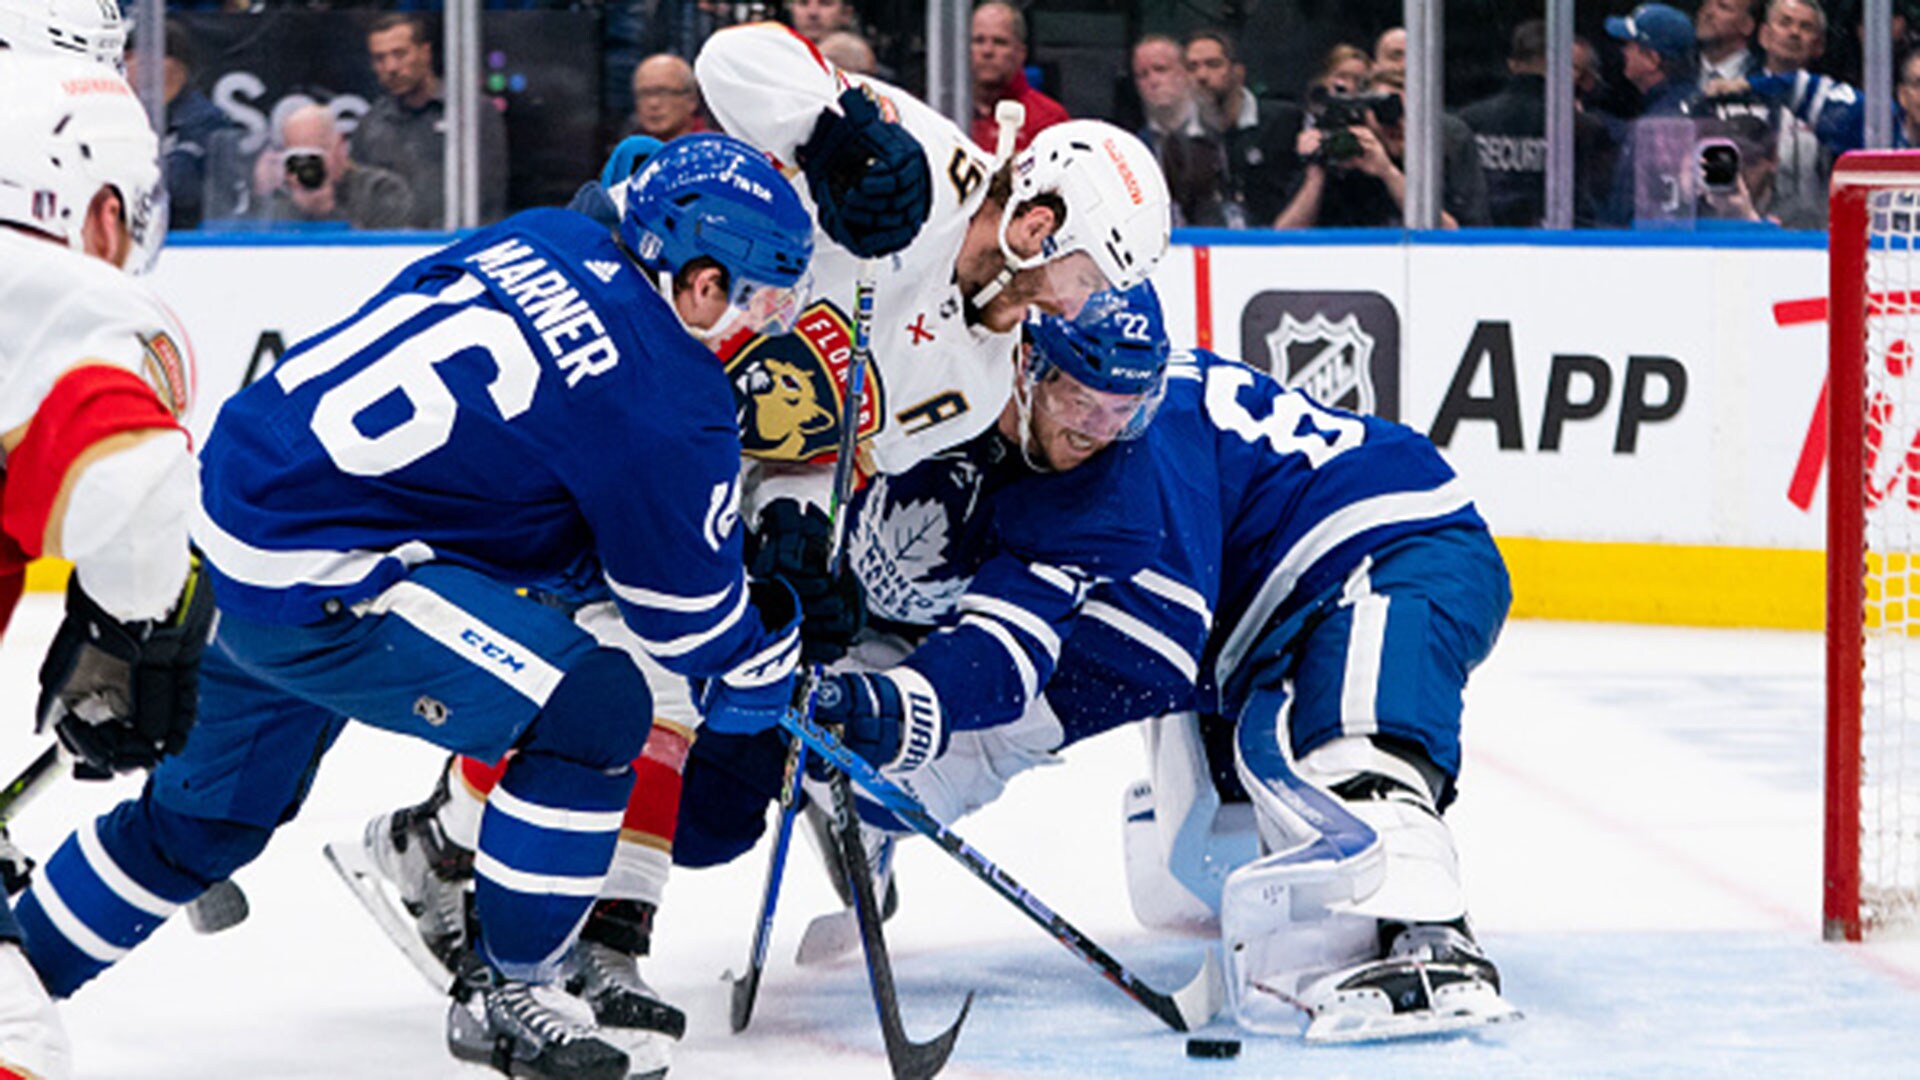 Down 3-0, Leafs' Big 4 seeking breakthrough versus Panthers